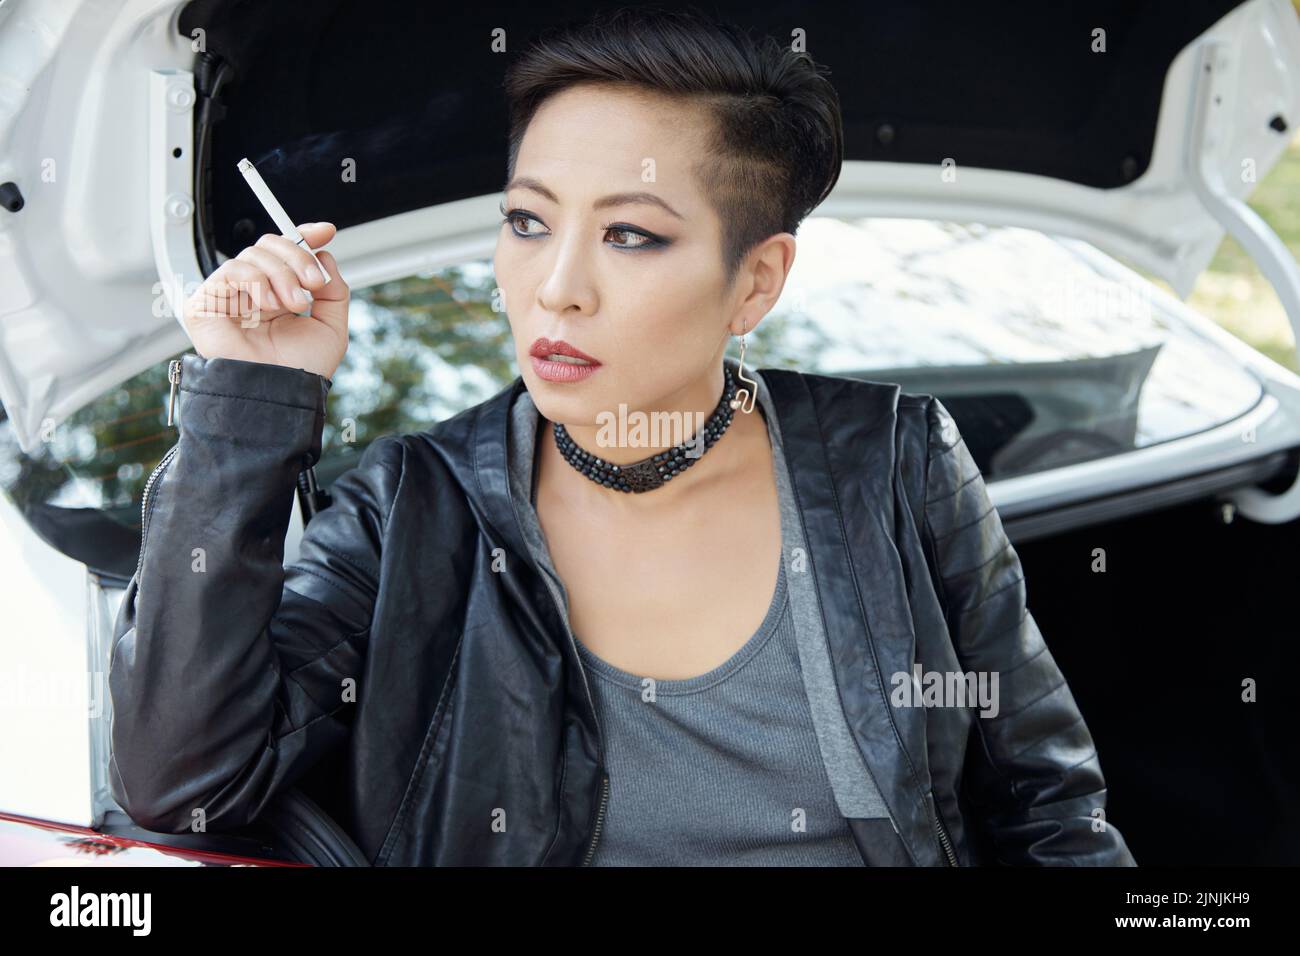 Portrait de la belle jeune femme asiatique édgée fumant de la cigarette Banque D'Images